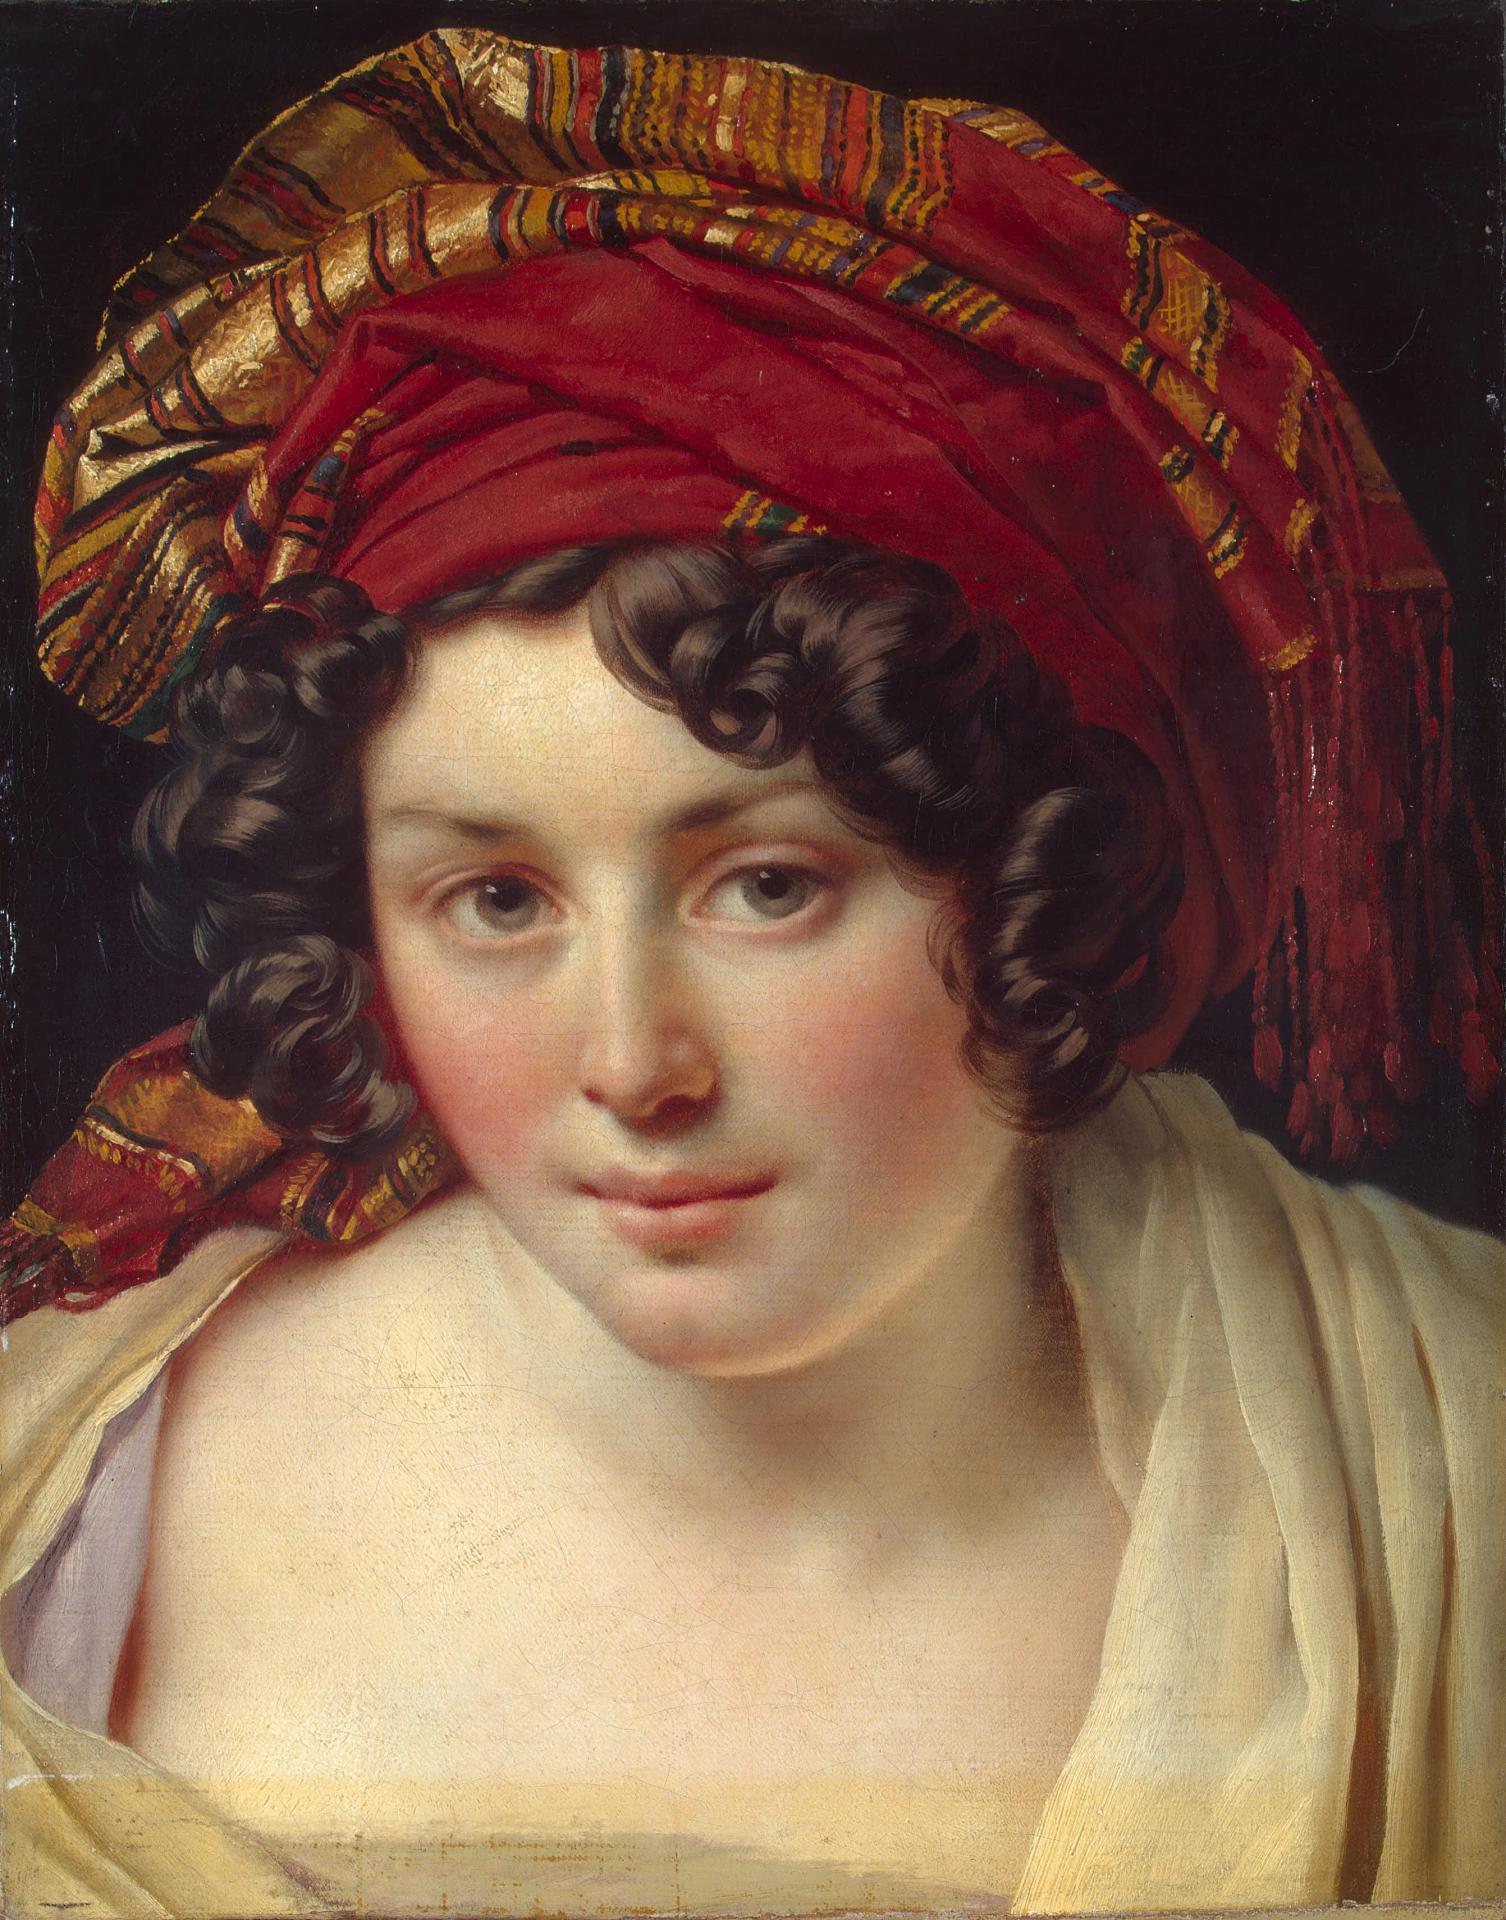 Анн-Луи Жироде-Триозон. "Голова женщины в тюрбане". Около 1820. Эрмитаж, Санкт-Петербург.